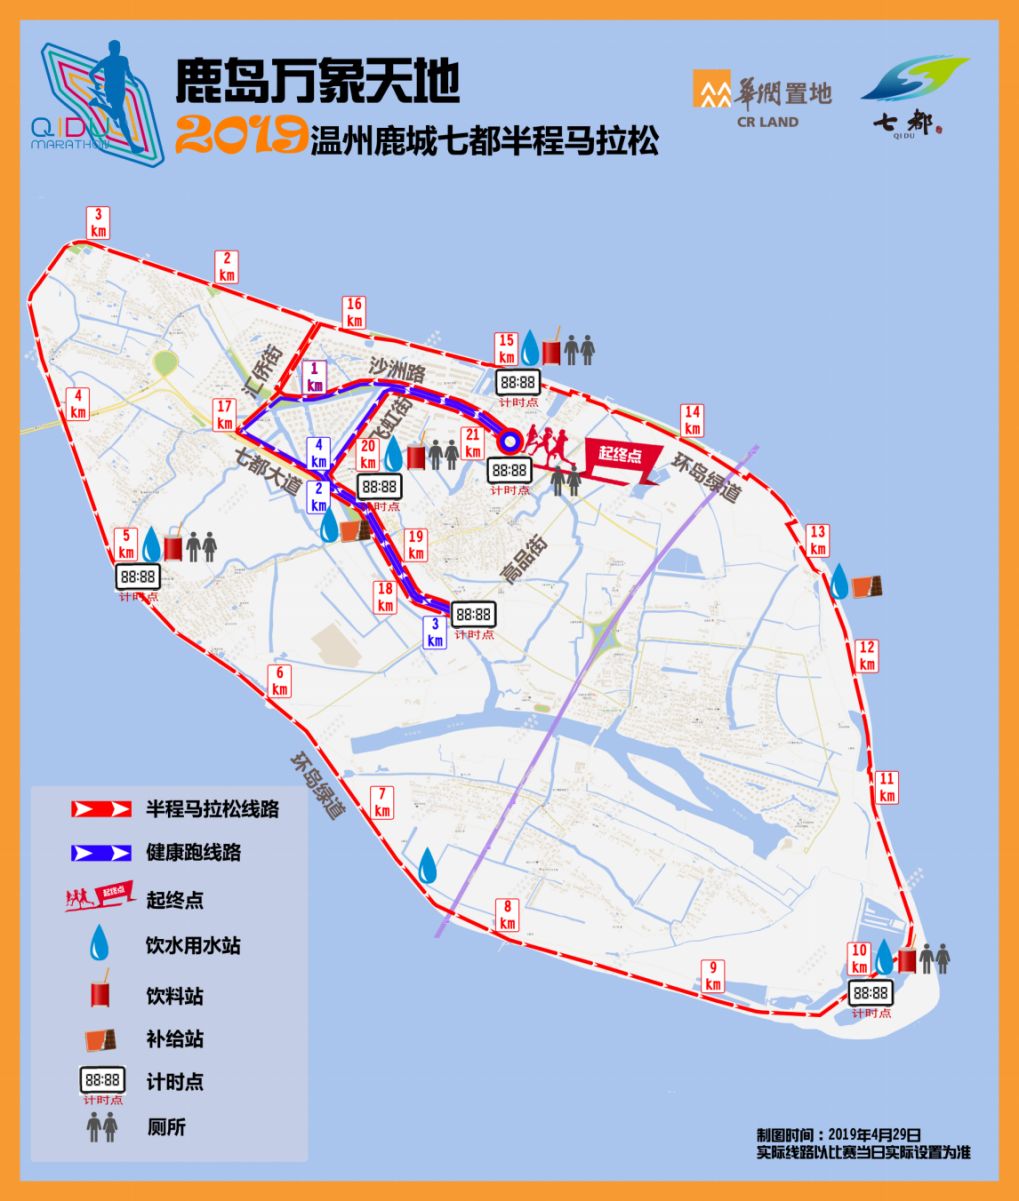 鹿岛万象天地2019温州七都半程马拉松赛道探路报告